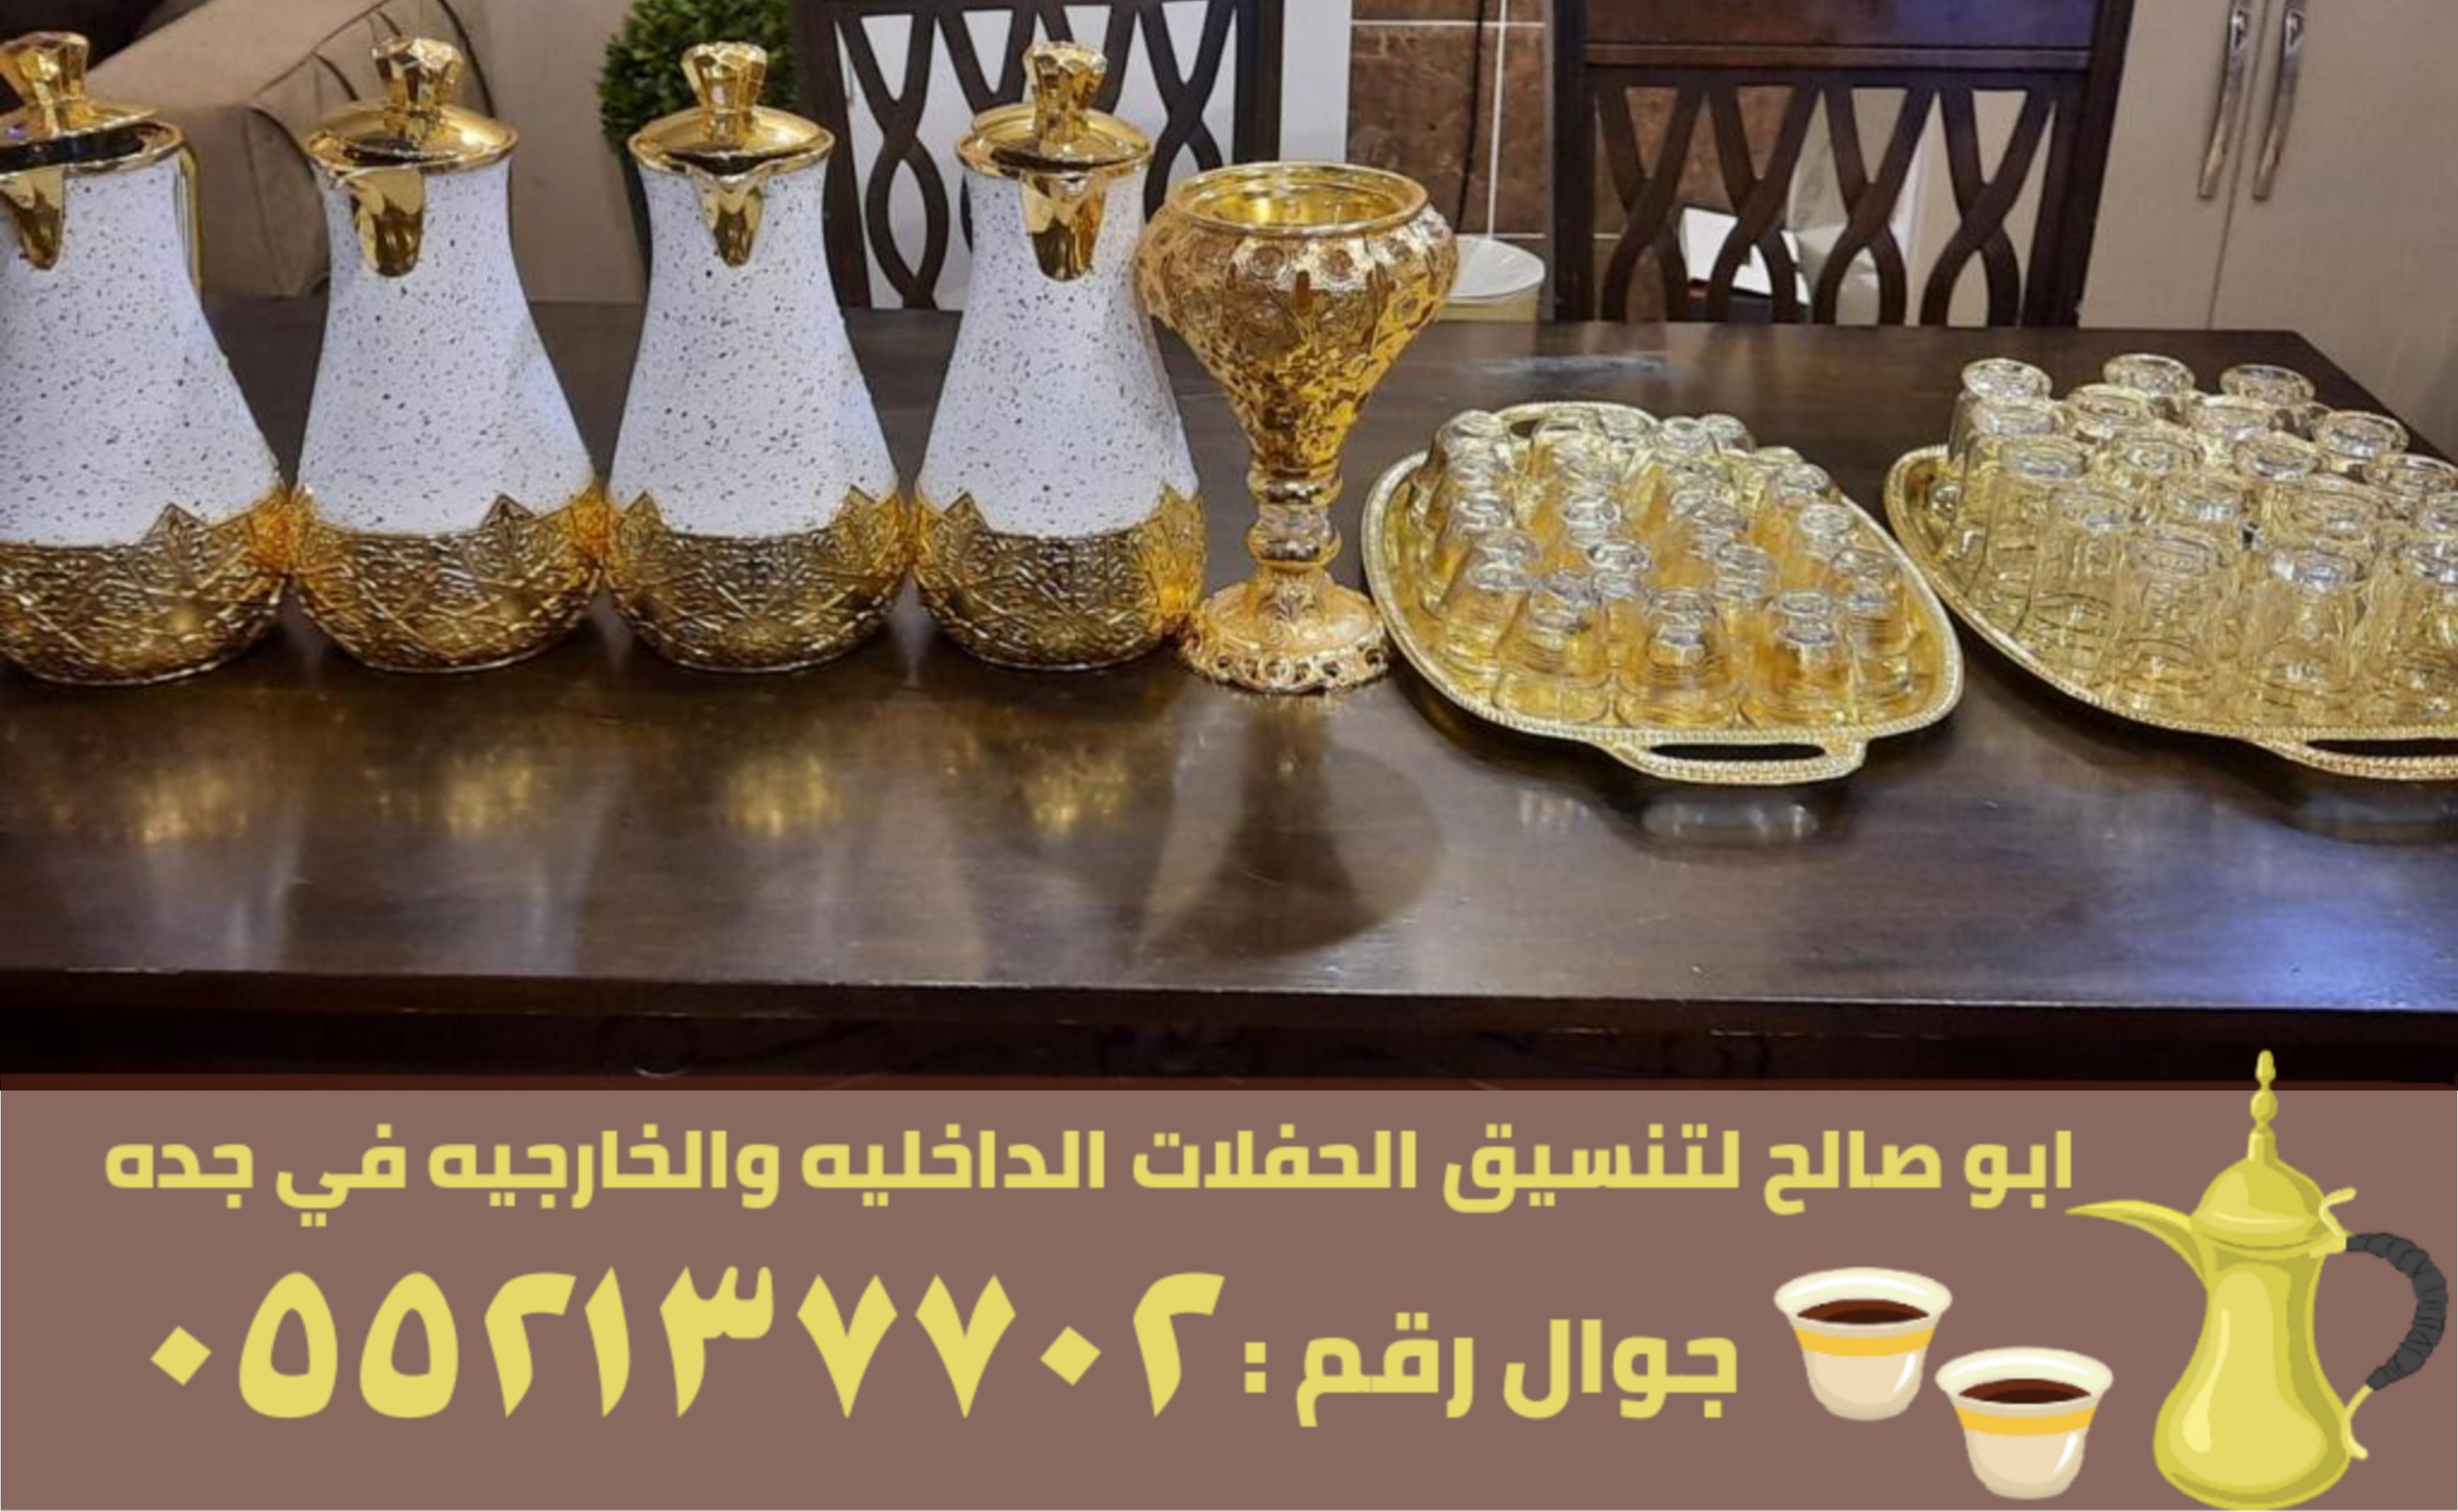 صبابين قهوة مباشرين في جدة,0552137702 892434143